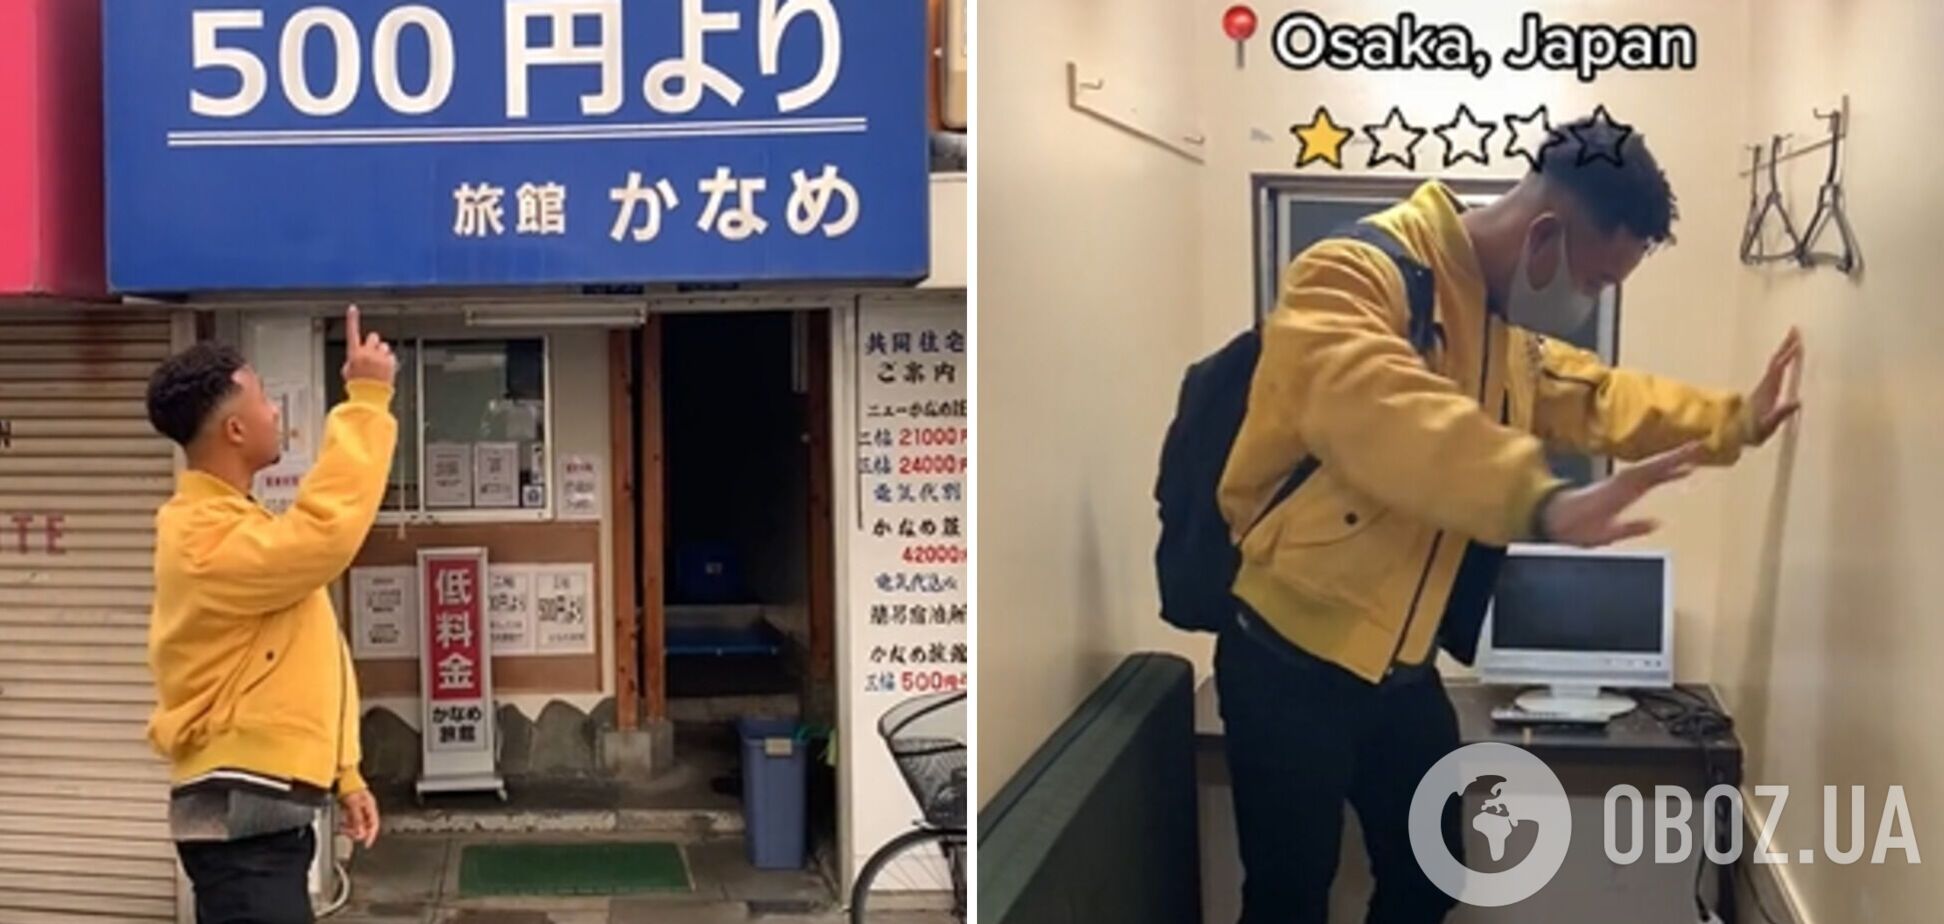 Все пахло мочой: турист показал крохотный отельный номер в Японии за $5/ночь